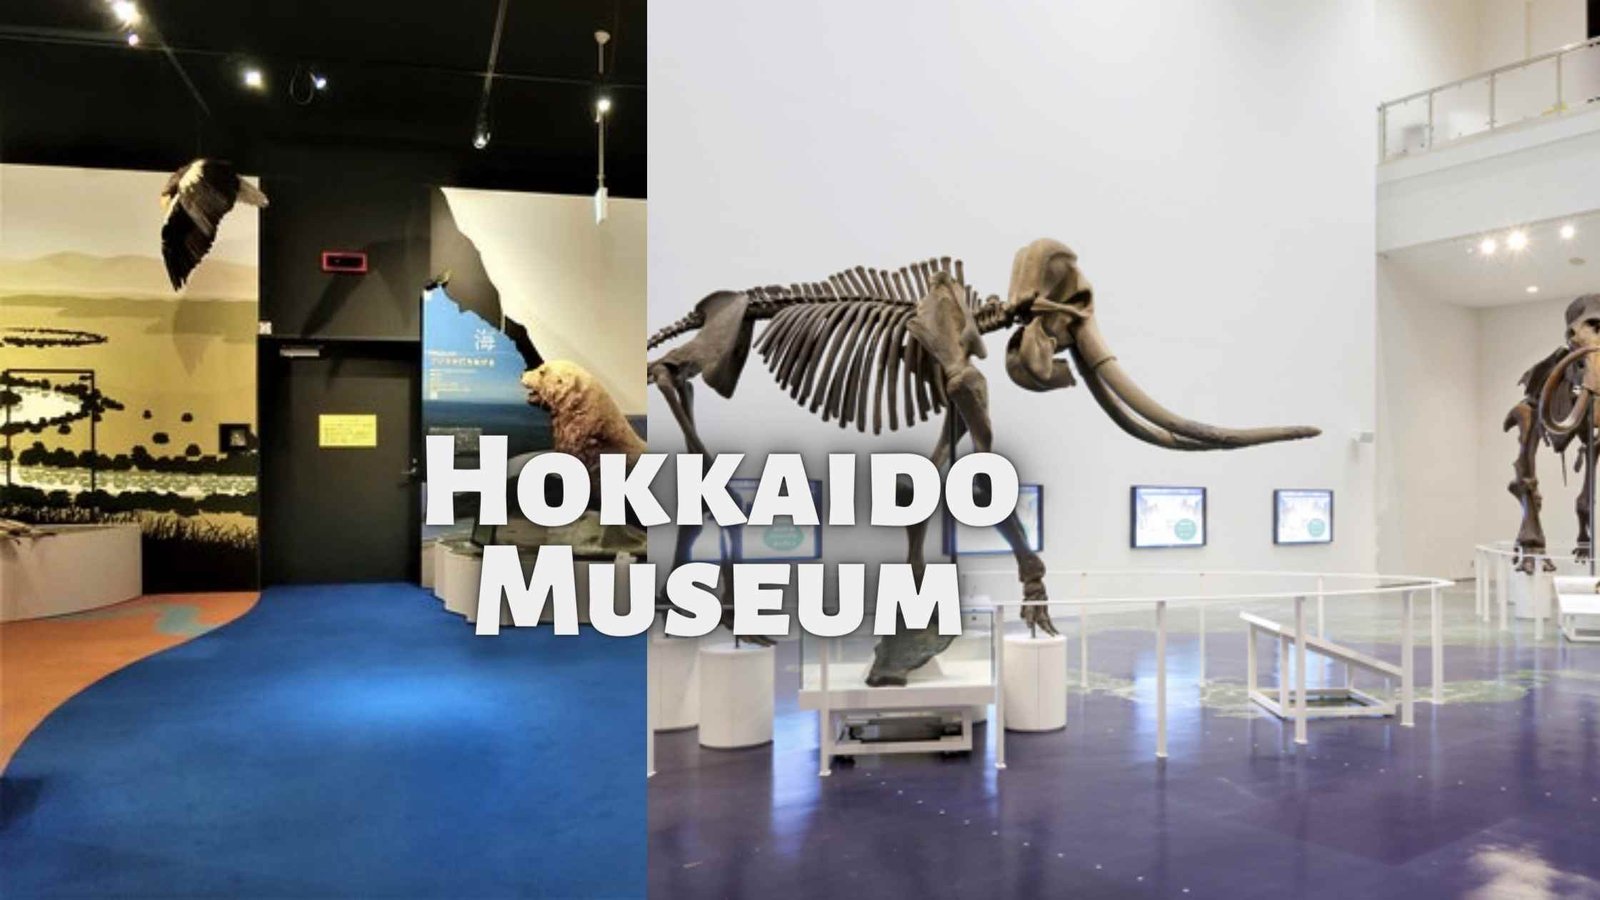 about Hokkaido Museum